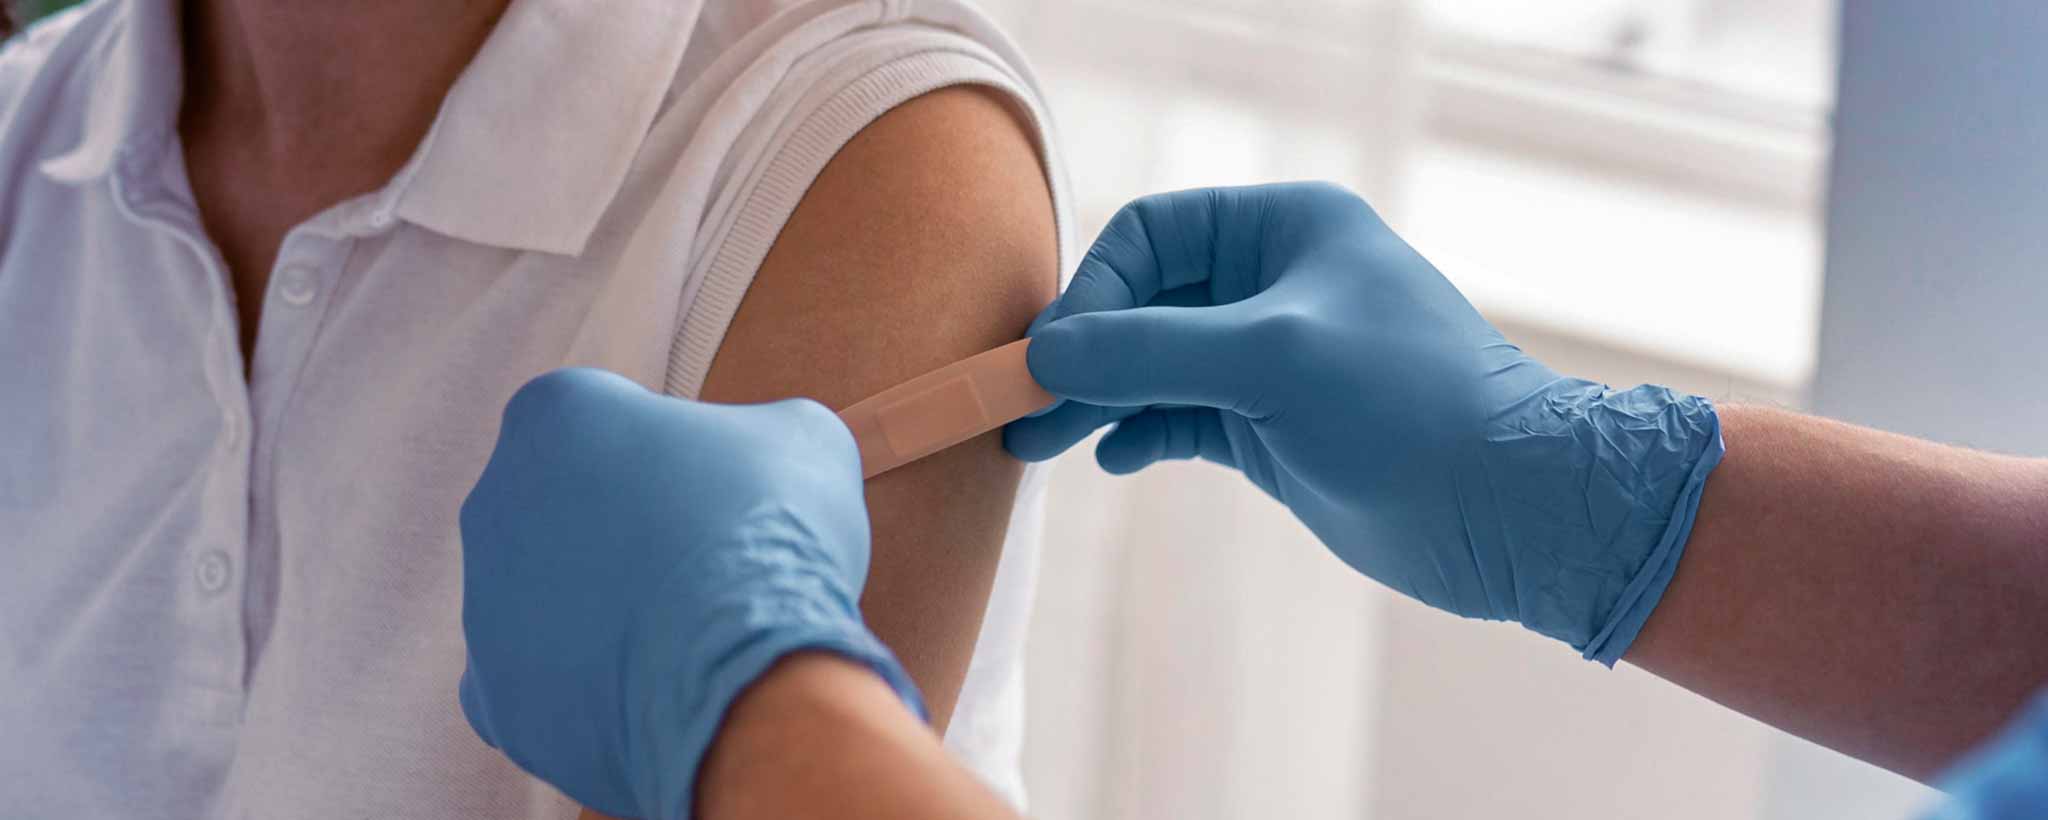 'Vaccination bandage'